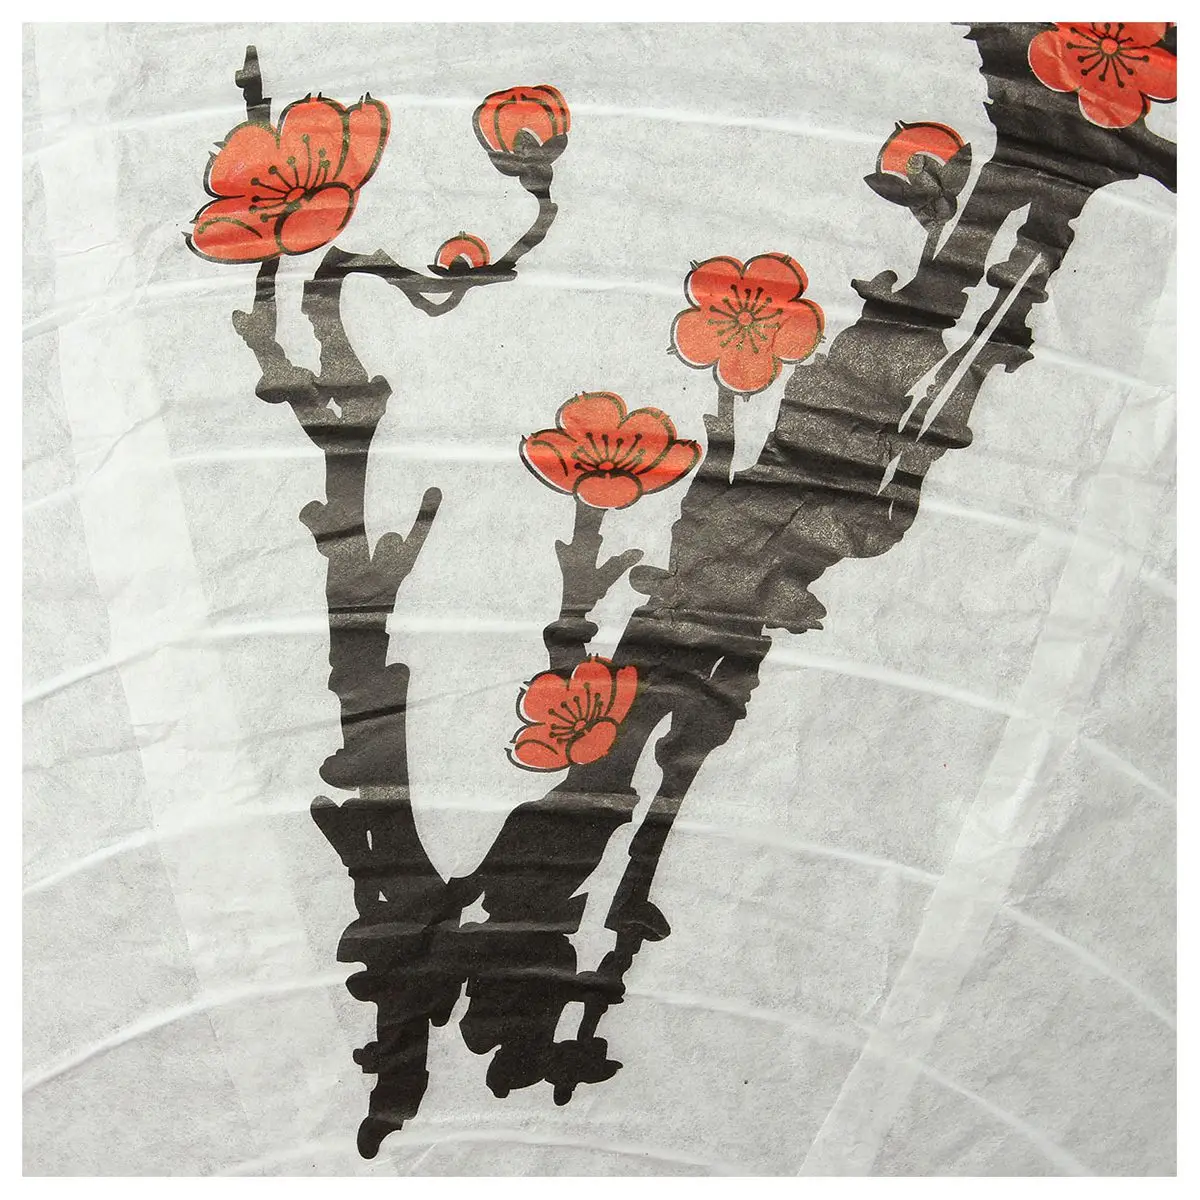 ALIM горячая Распродажа 30 см абажур бумажный фонарь освещение в восточном стиле украшение цветок сливы